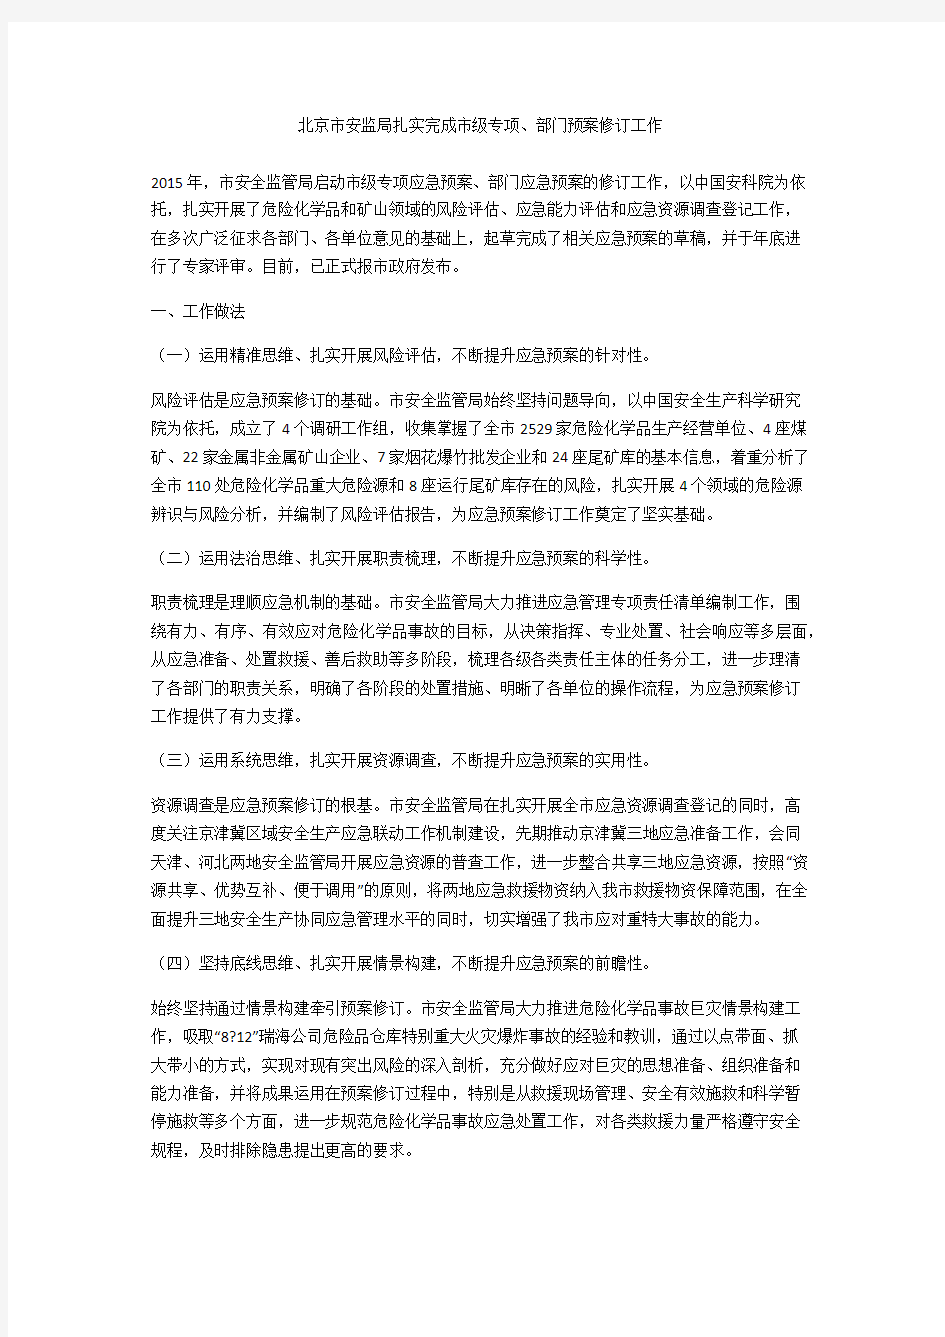 北京市安监局扎实完成市级专项、部门预案修订工作